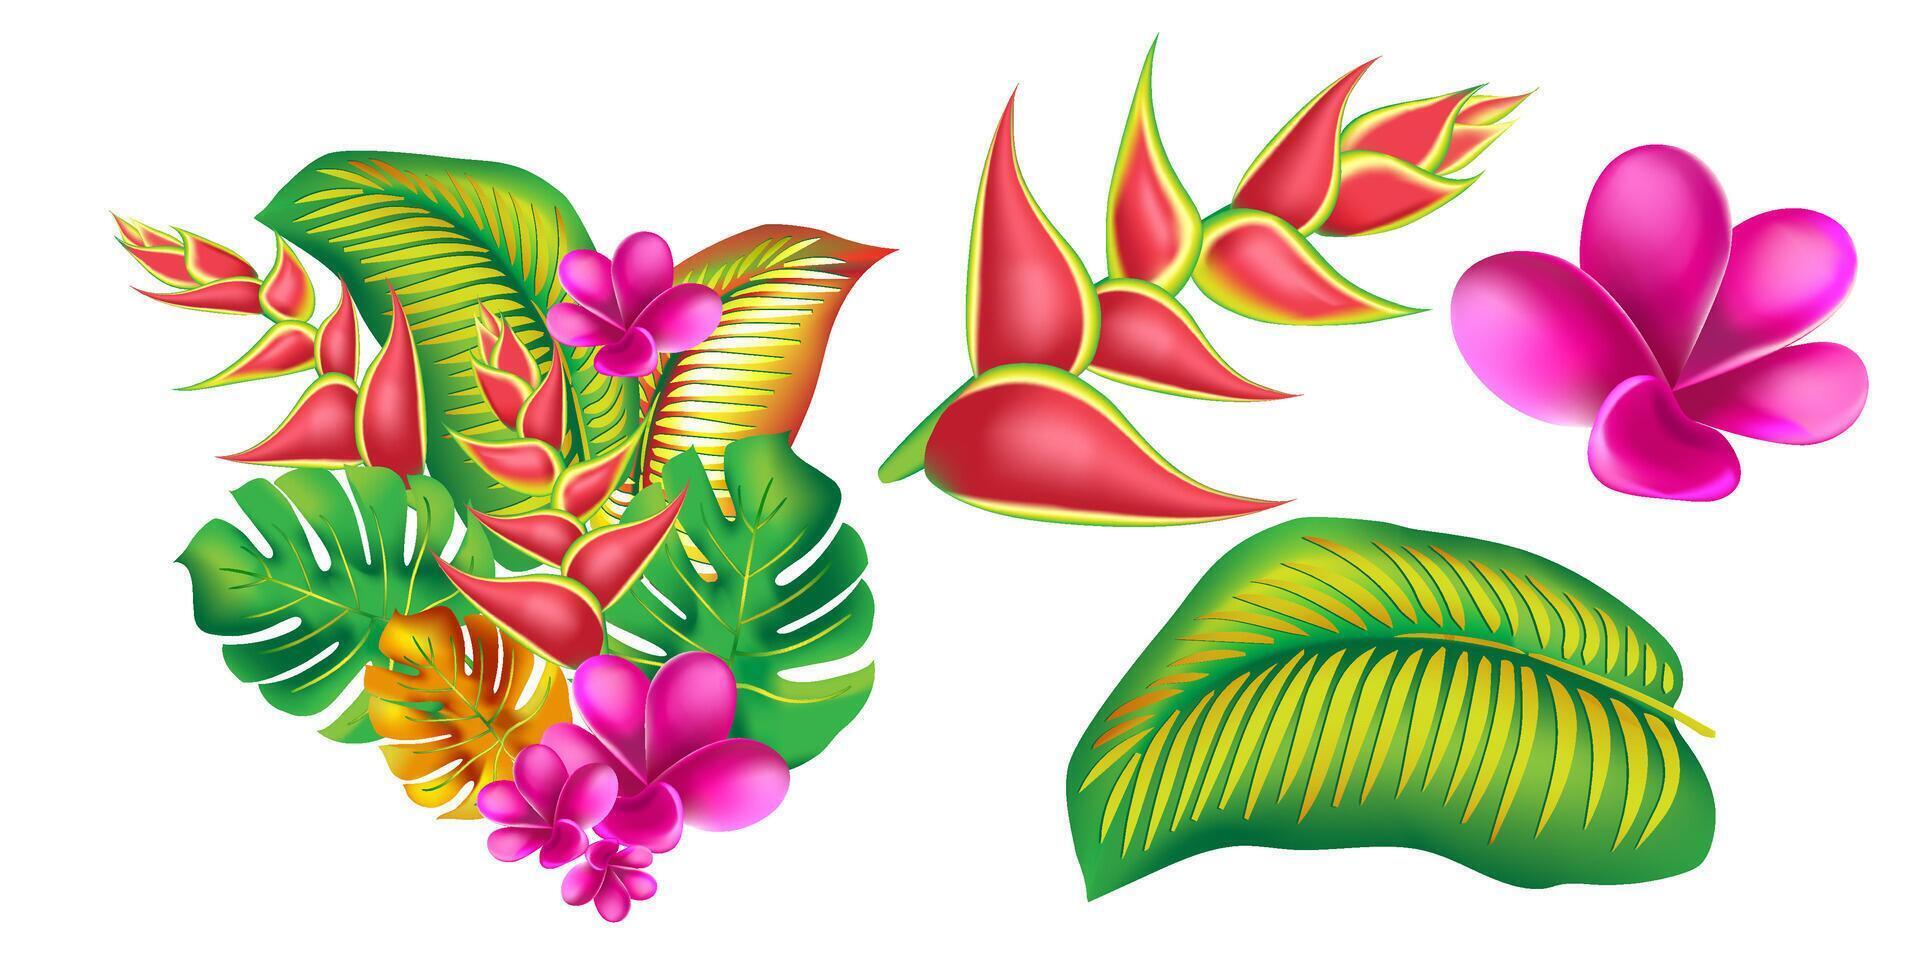 selva flor, hojas trópico colocar. aislado elementos. palma hoja, monstruo, rosado plumeria flor, hibisco florecer, exótico tropical verano flores y hojas. vector